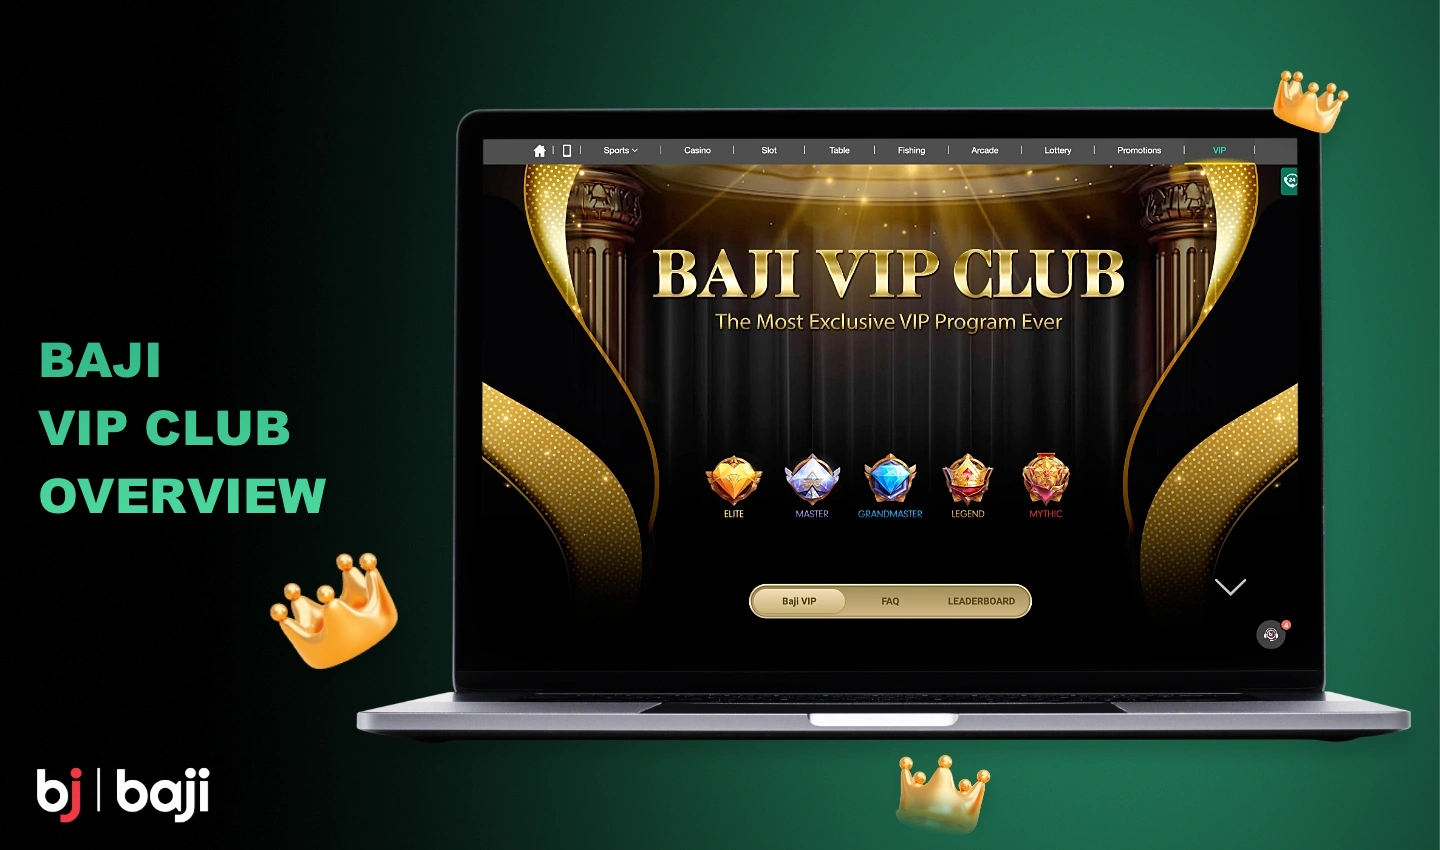 Baji वीआईपी क्लब एक विशेष कार्यक्रम है जो आपको अतिरिक्त पुरस्कार अर्जित करने की अनुमति देता है